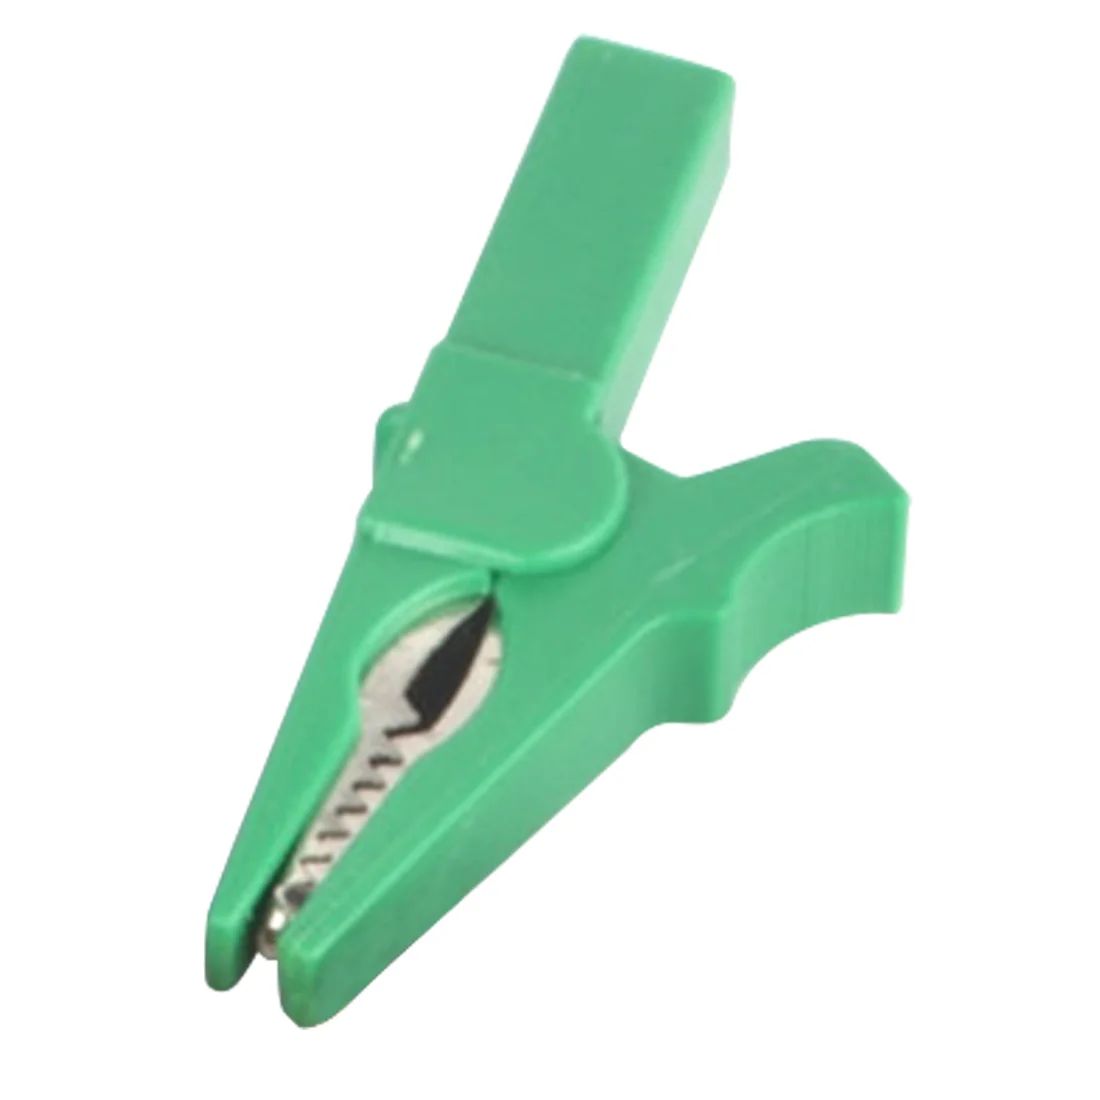 Батарея тестовый зажим 55 мм крокодил зажим для штекера типа "банан" 4 мм мультиметр ручка кабель зонды крокодил зажим - Цвет: Green